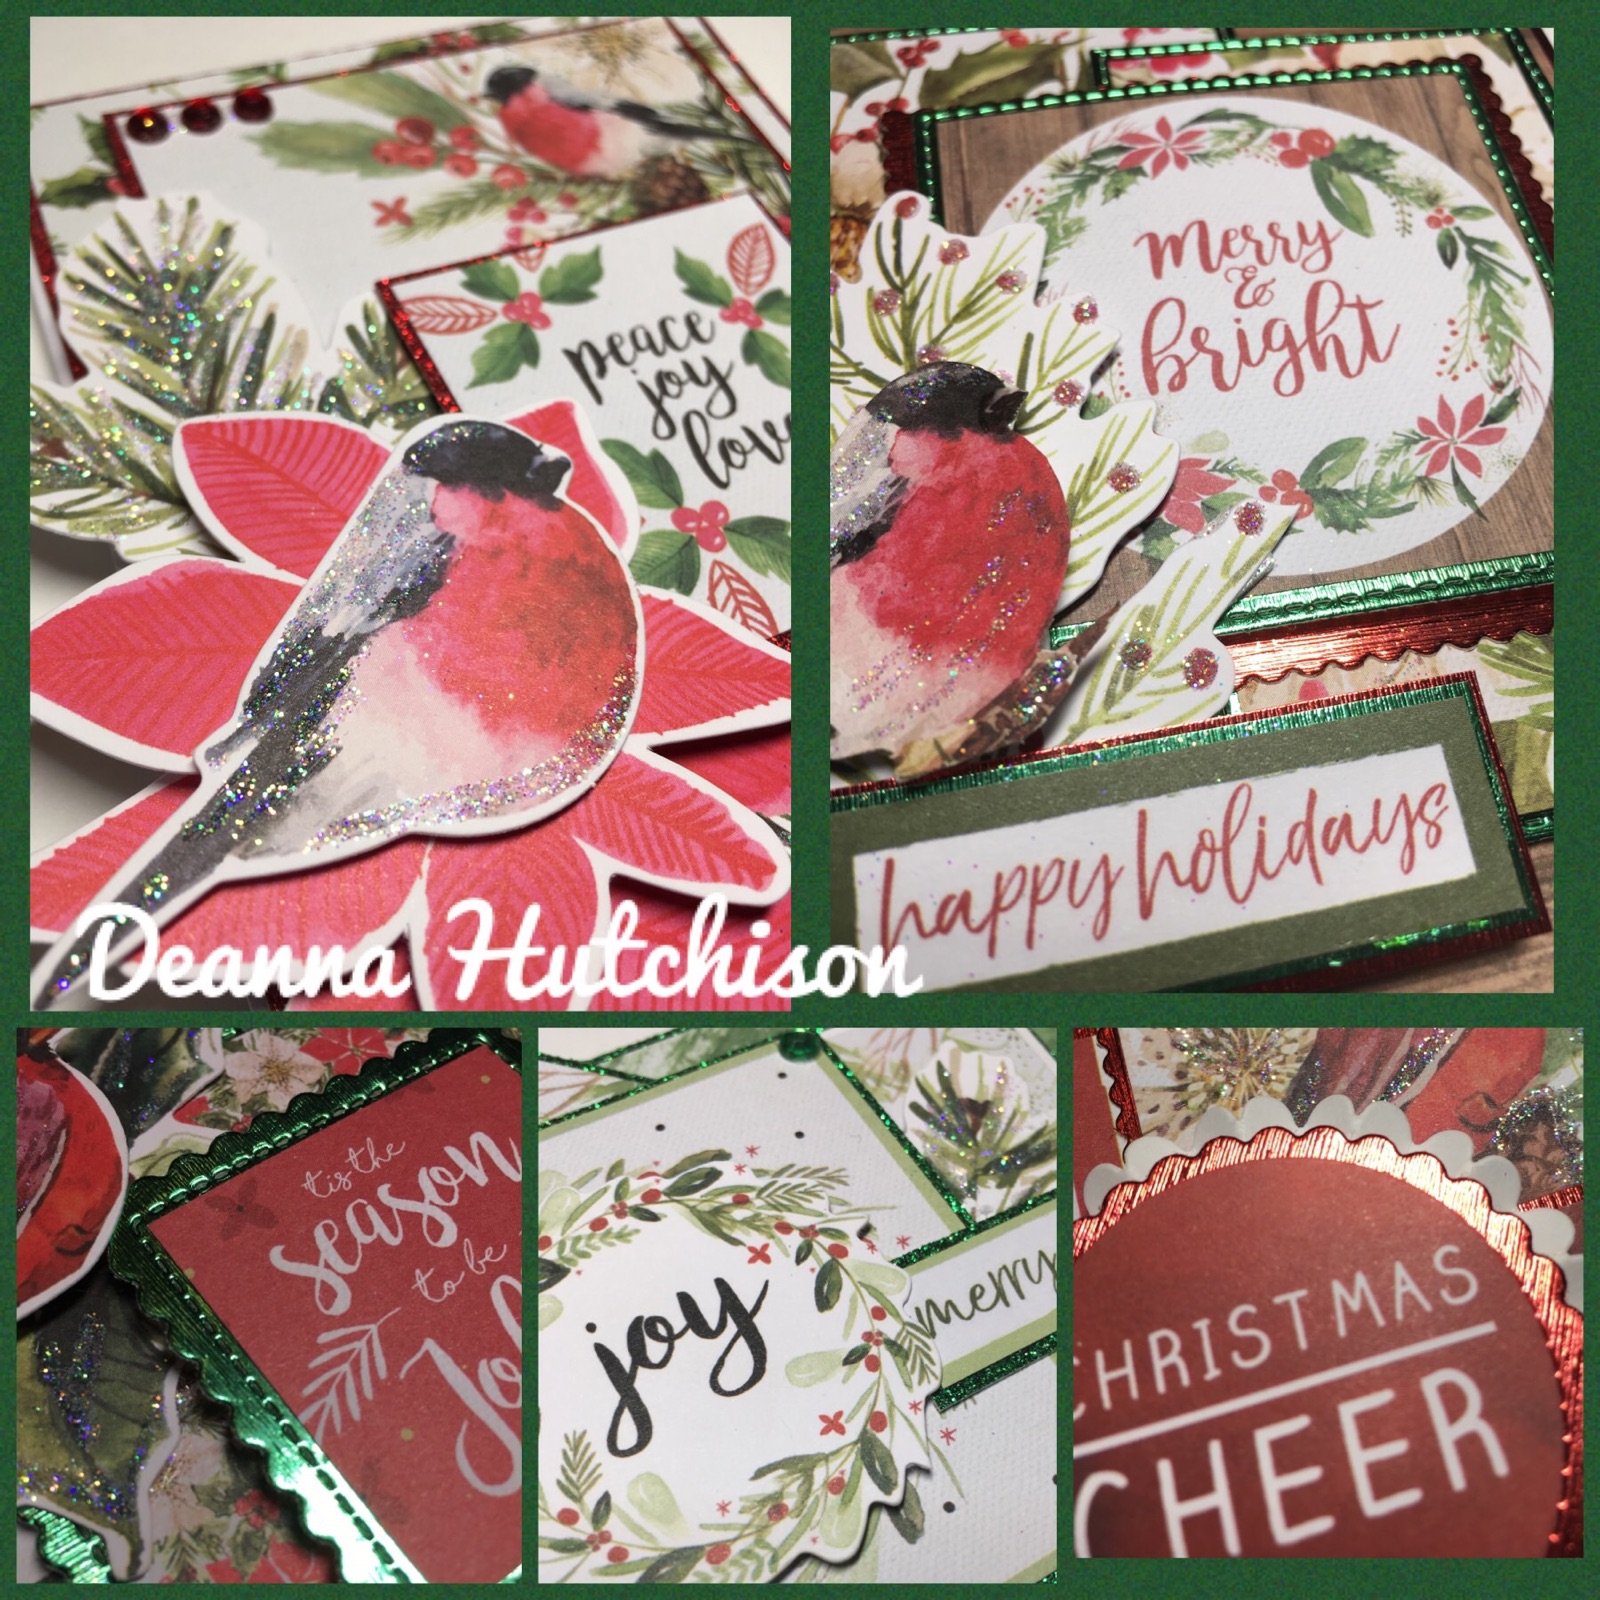 Holly Jolly Christmas Cards